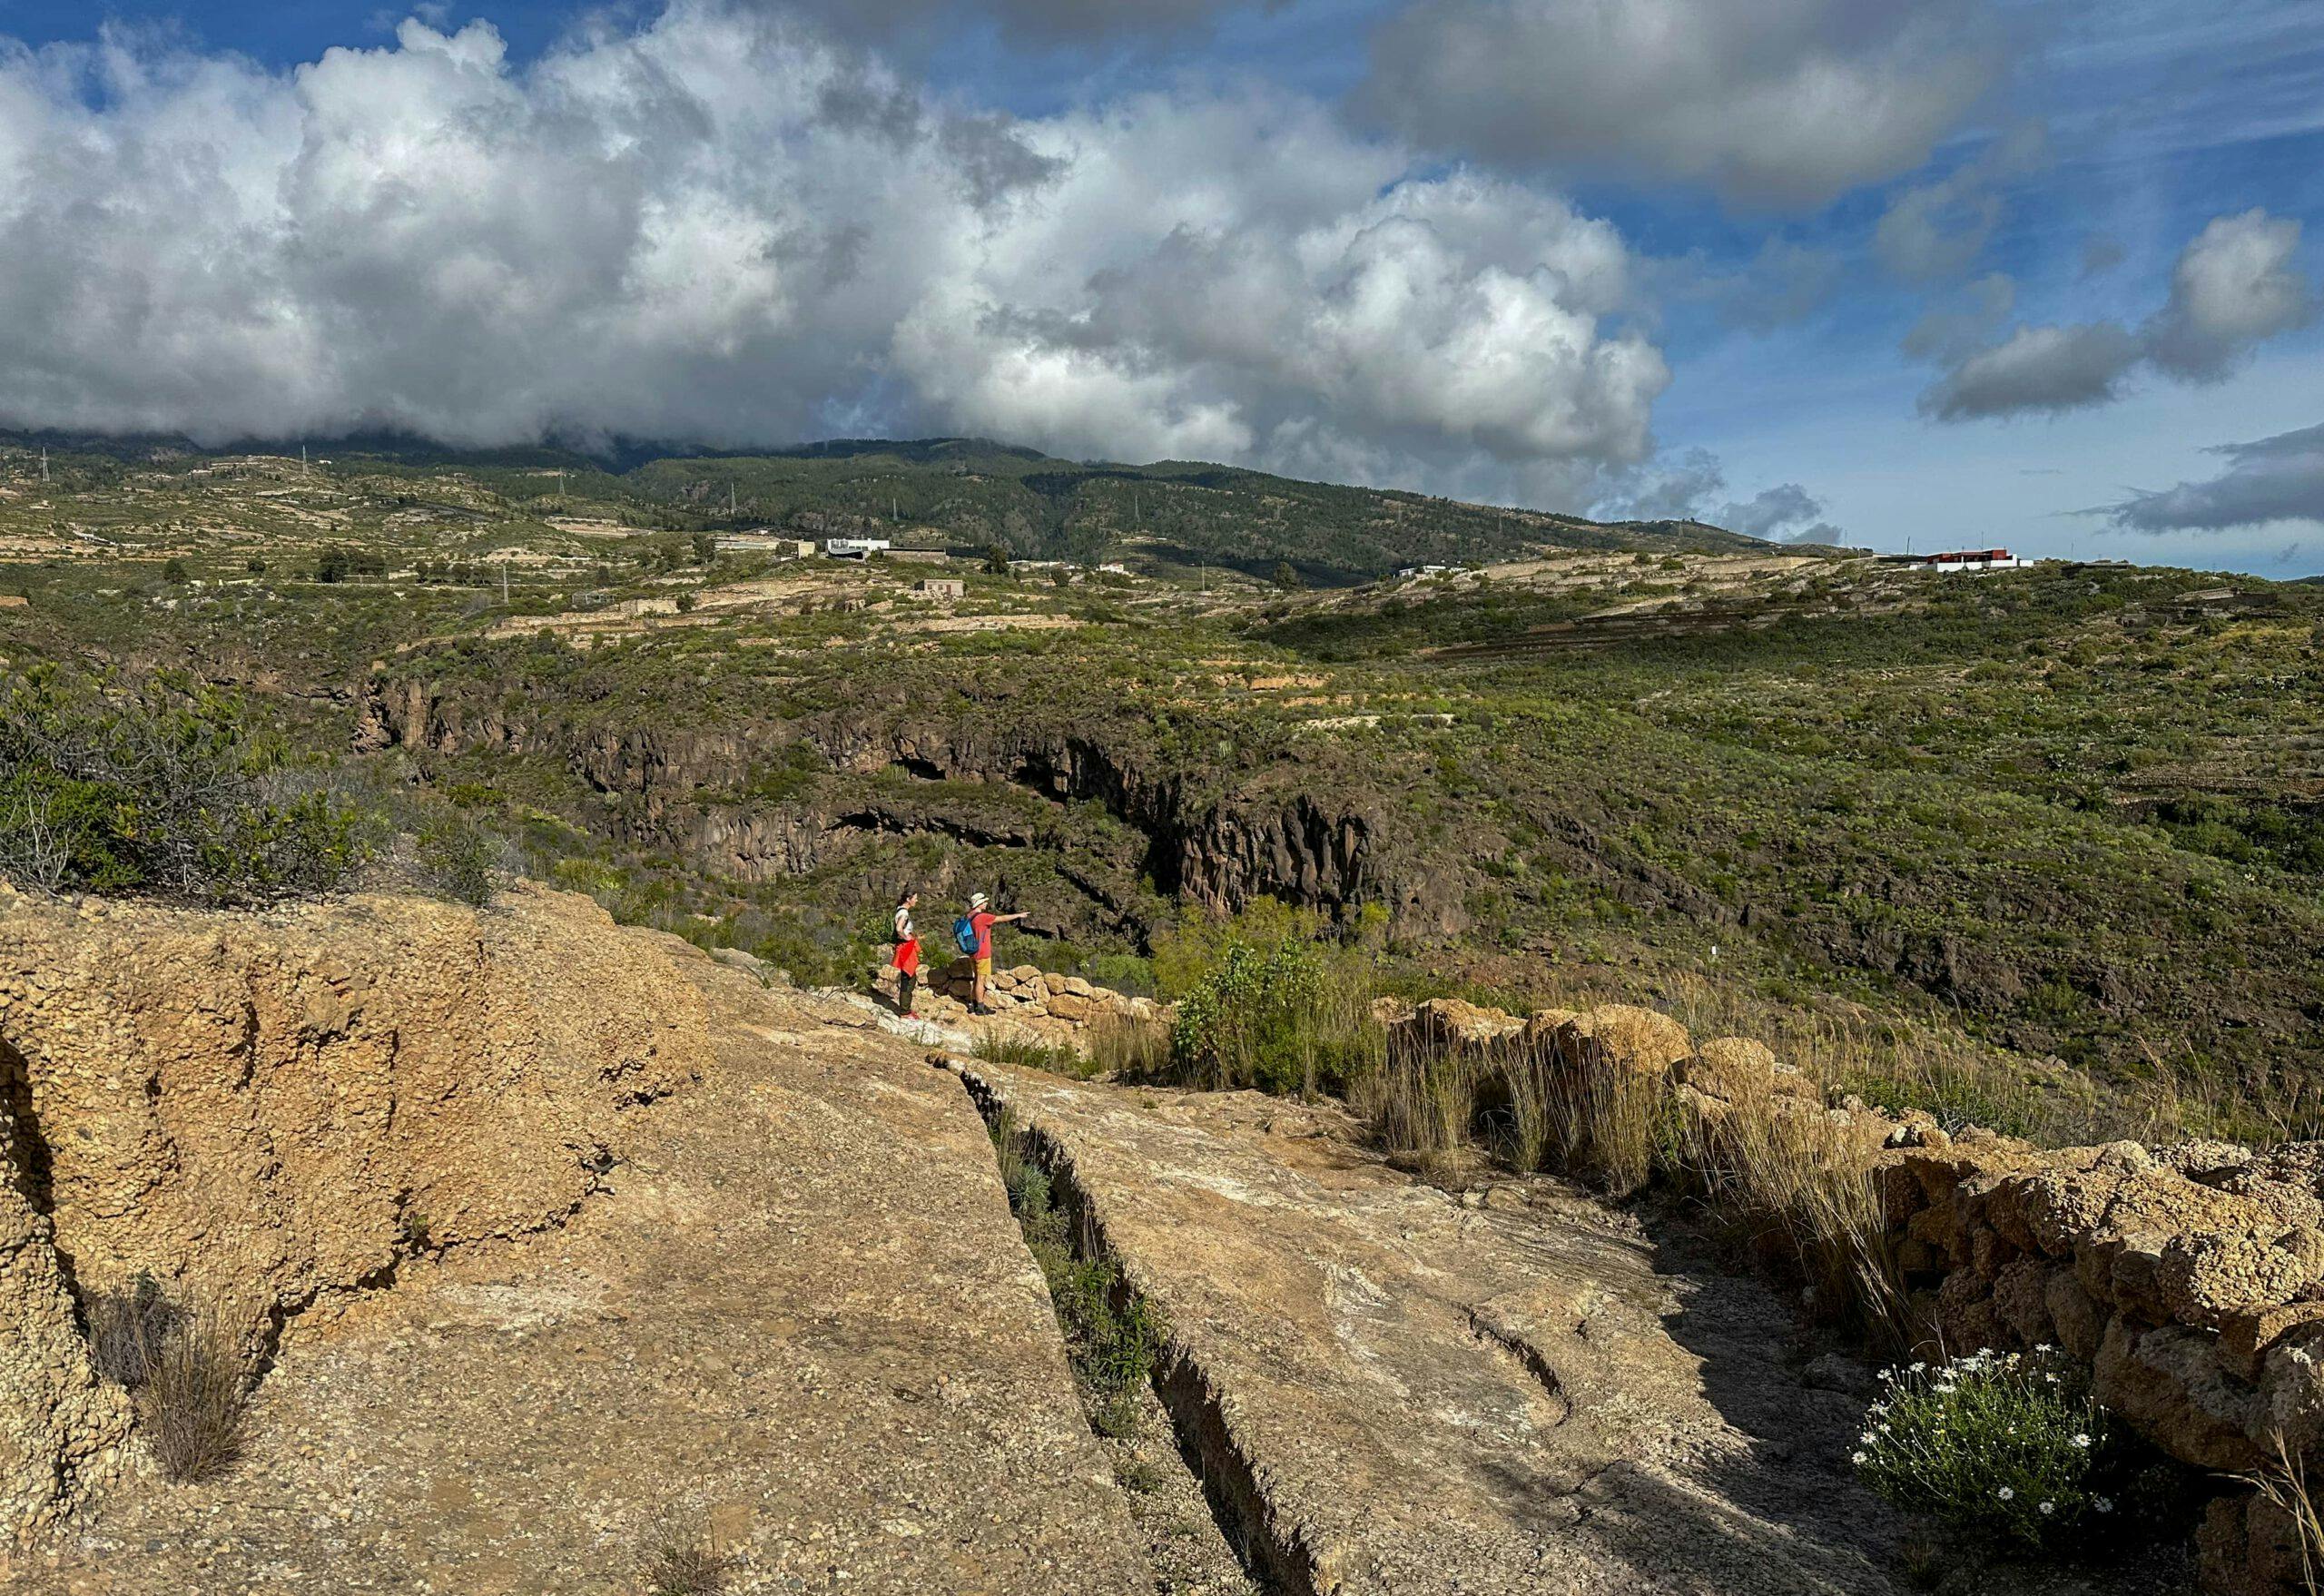 Camino Real del Sur from Granadilla de Abona to Güimar